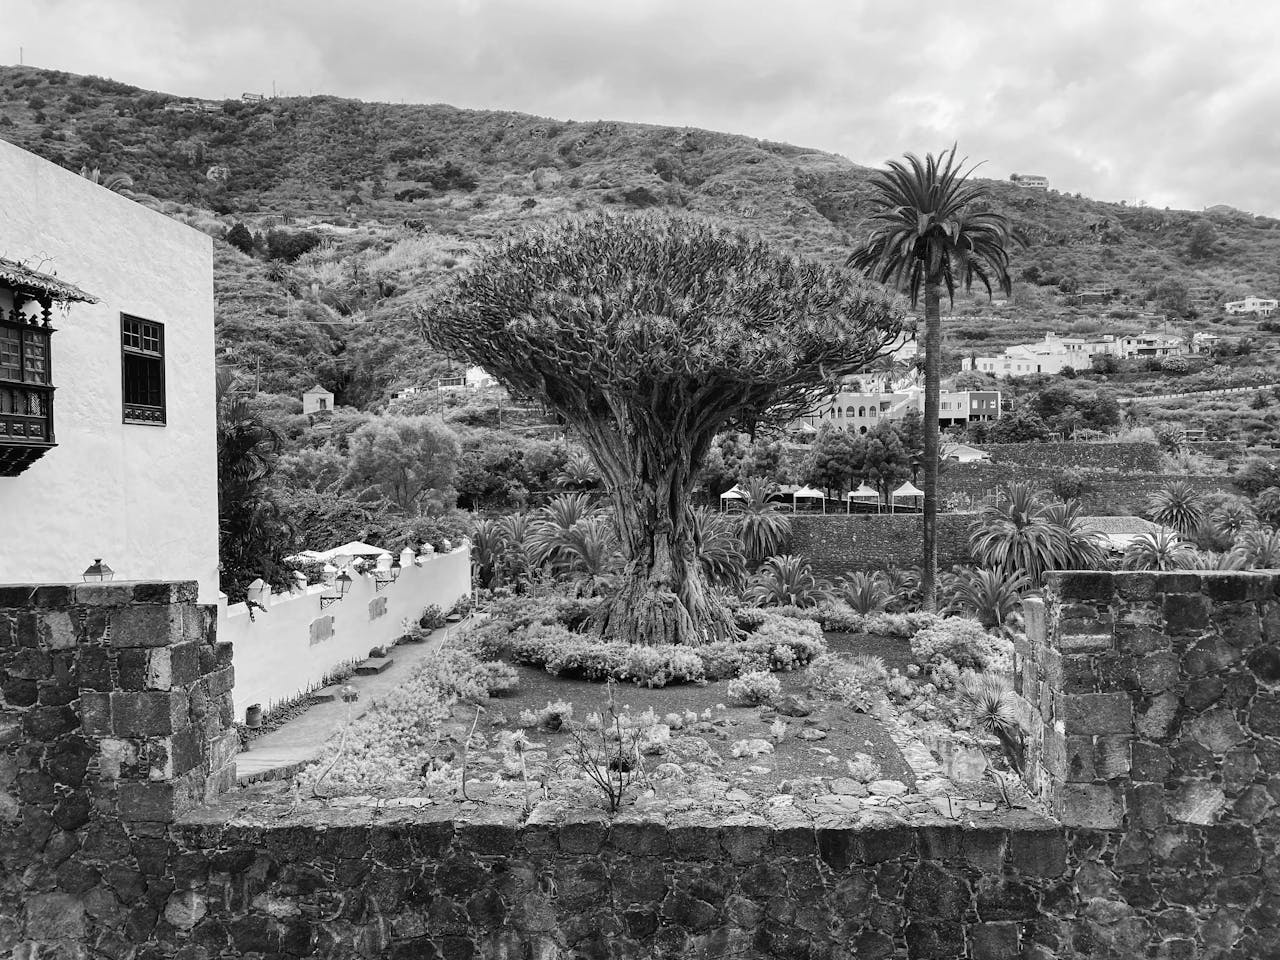 Imagen de el Draco en Santa Cruz de Tenerife donde encontrarás consignas cerca